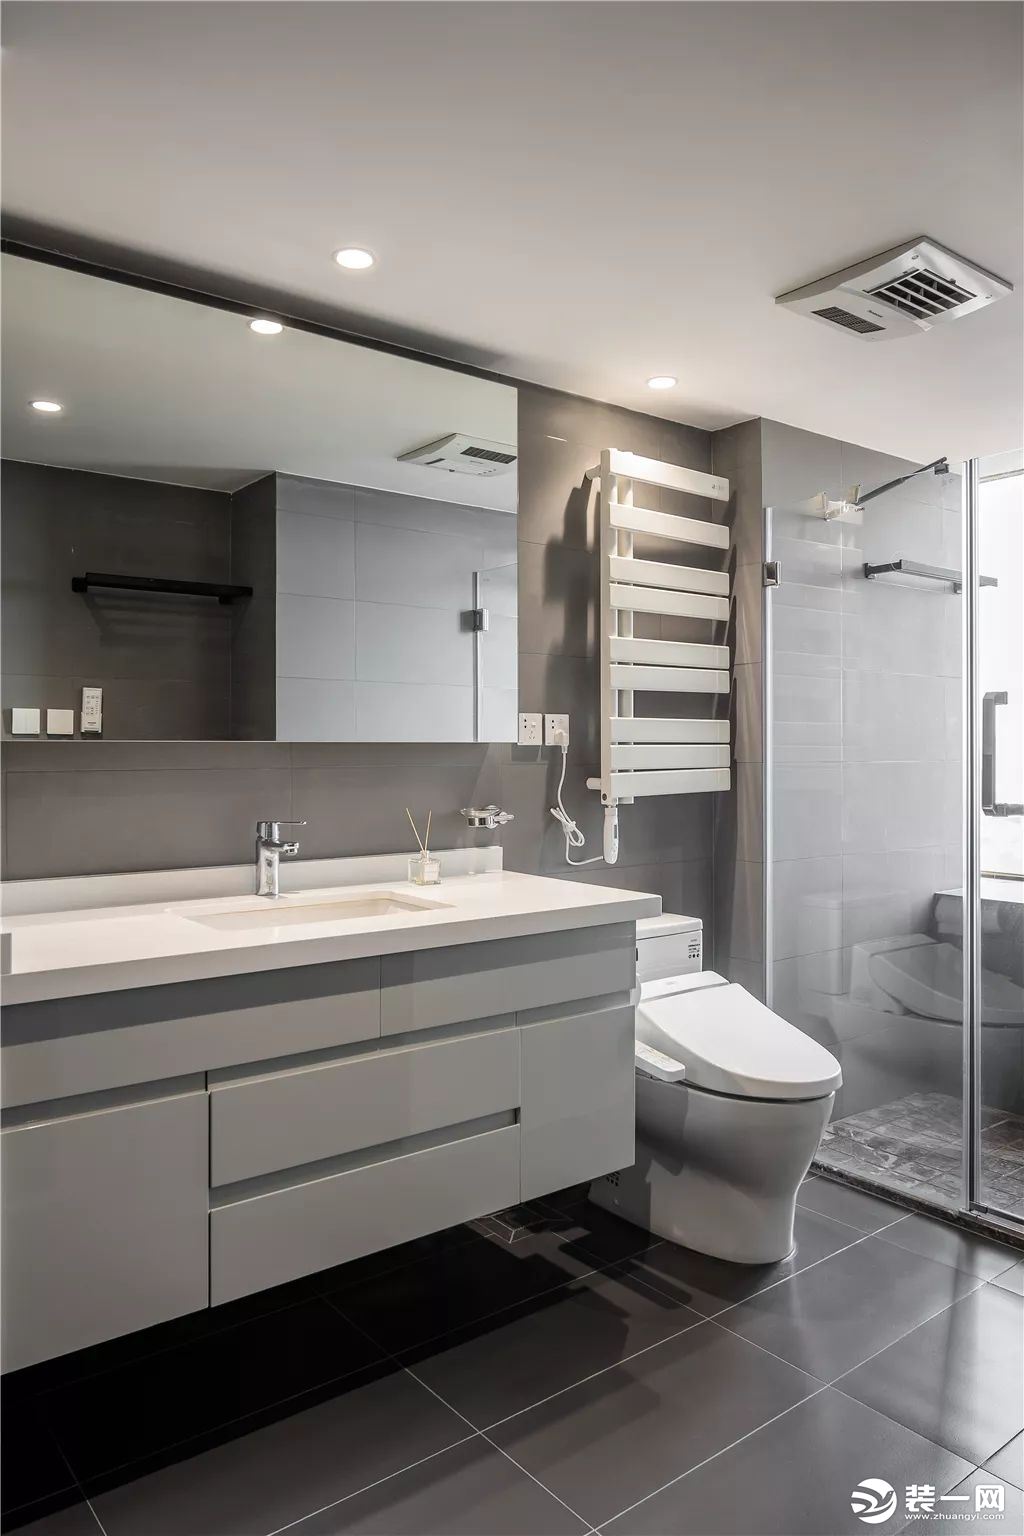 13卫生间整体简约灰色的空间，结合白色洗手盆柜、马桶与毛巾架，提供了一种现代素雅的卫浴空间感。